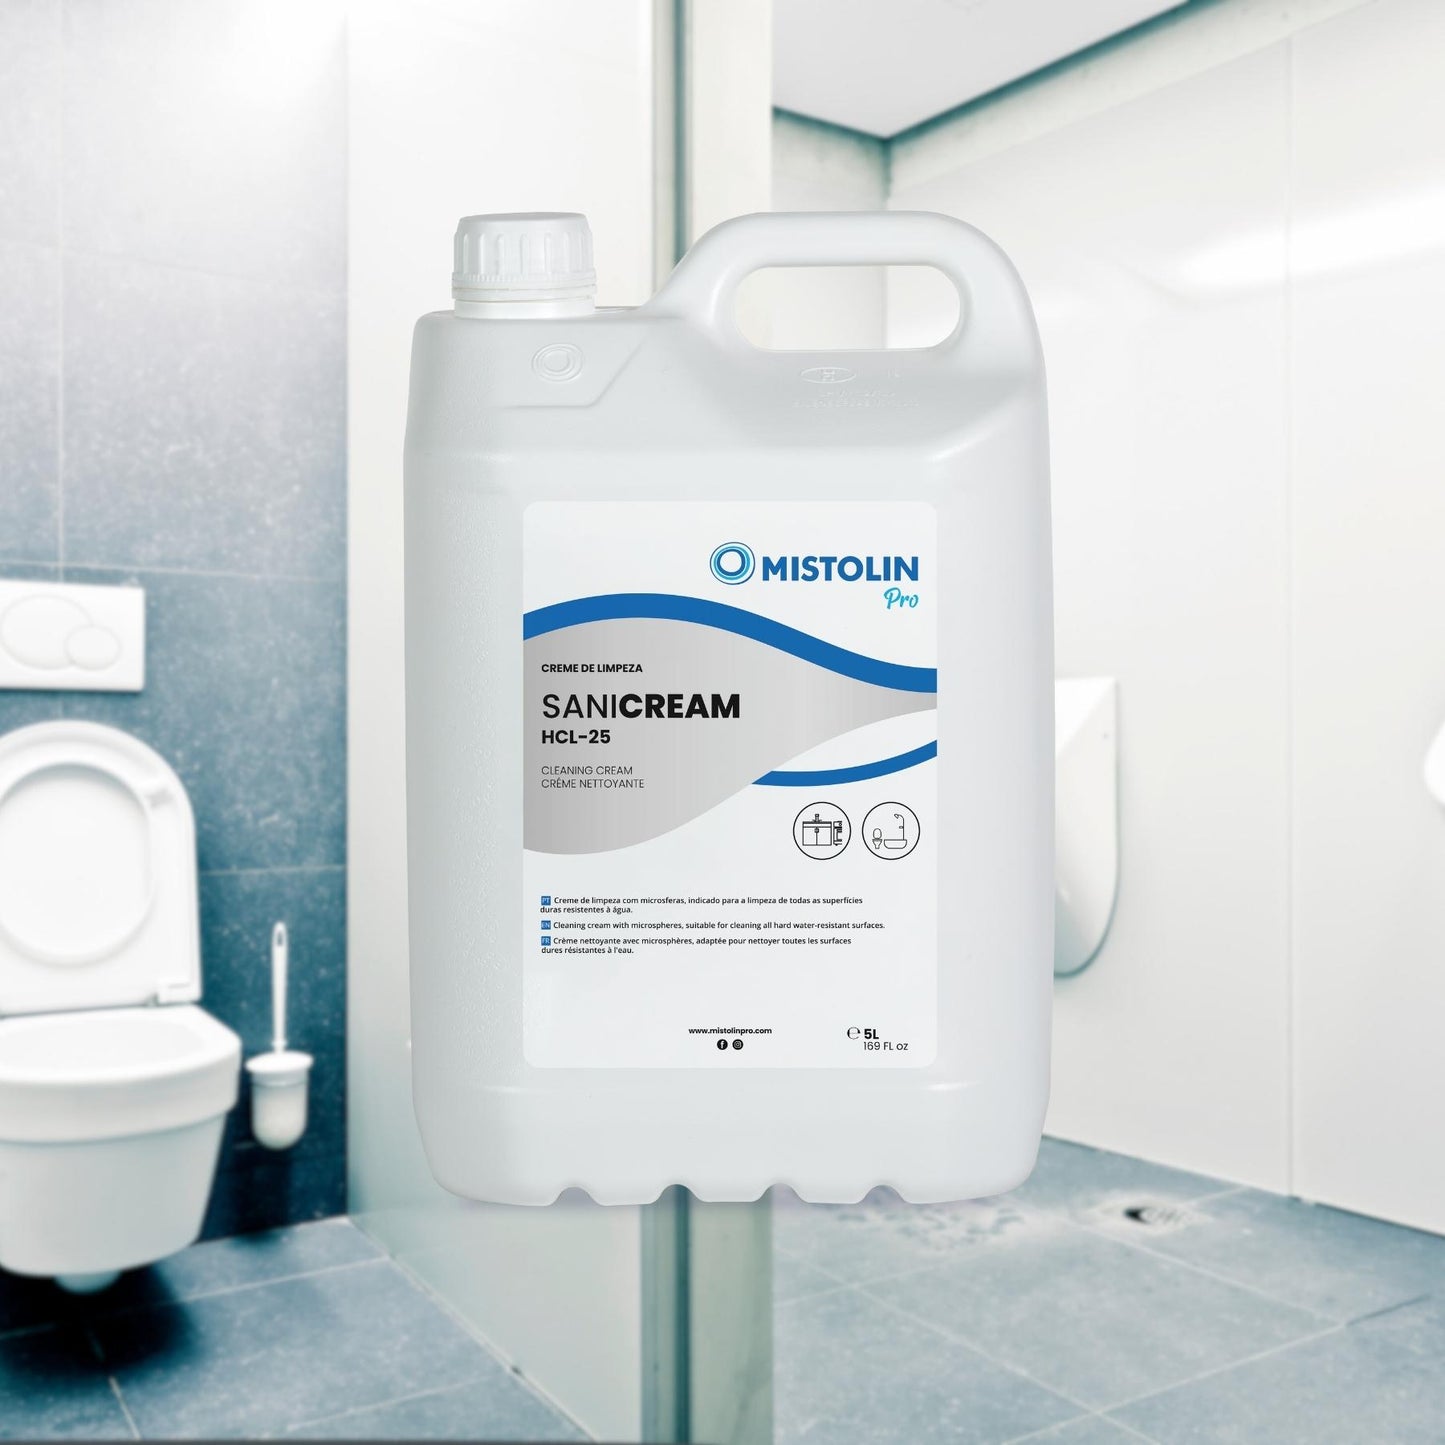 SANI CREAM HCL-25 CREME LIMPEZA WC 5LT é um creme de limpeza com microsferas, indicado para a limpeza de todas as loiças sanitárias.